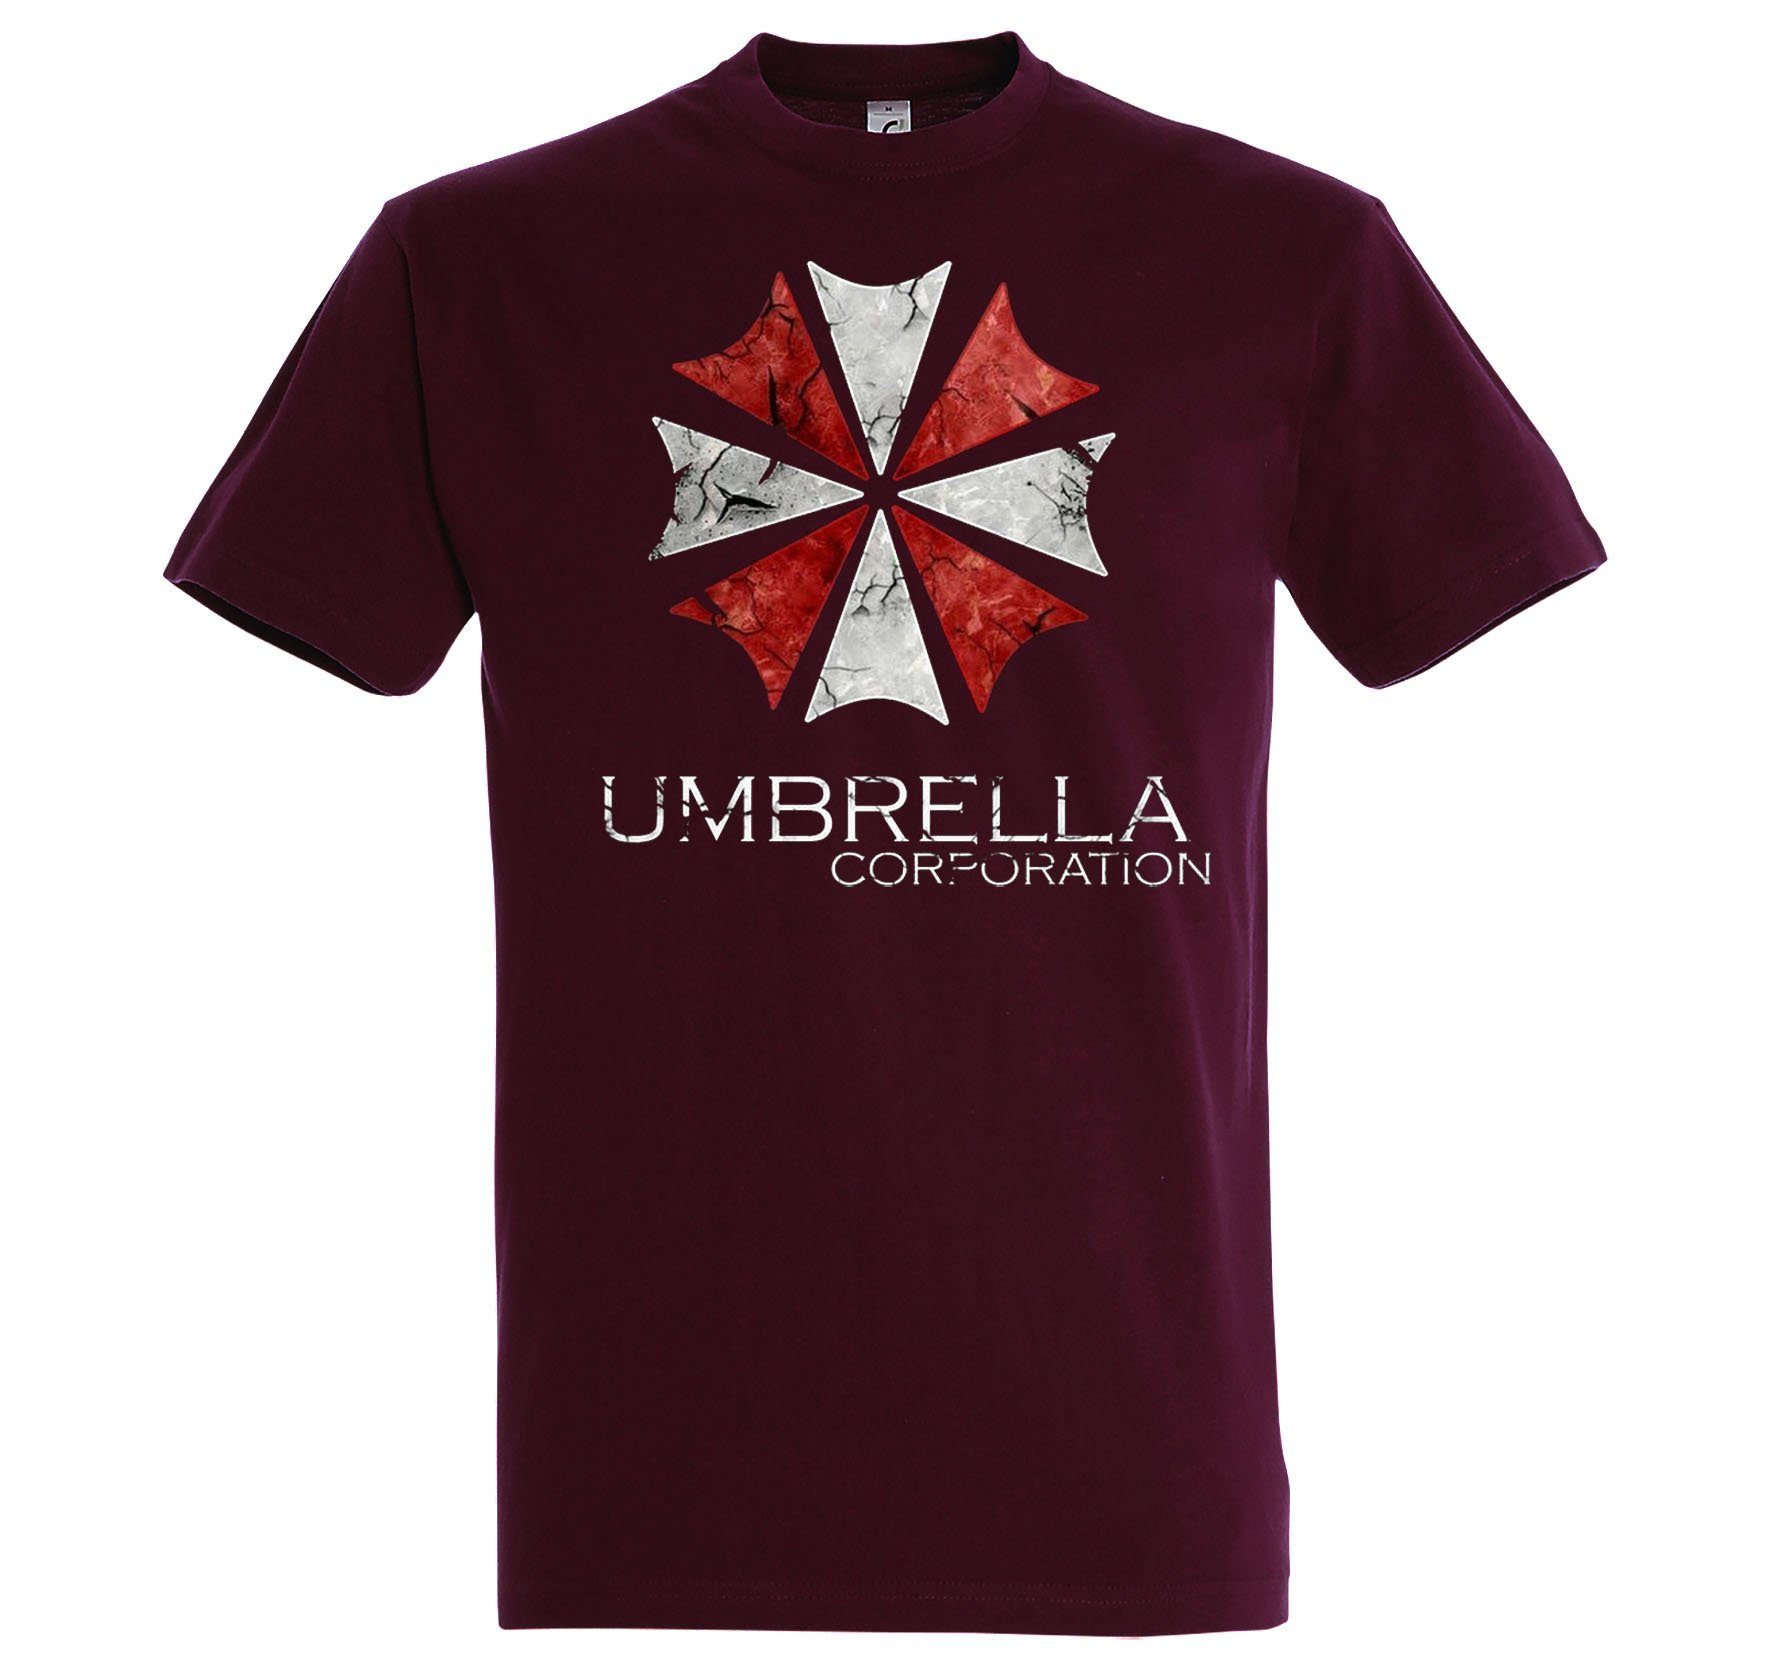 Shirt Designz trendigem Frontprint mit Umbrella Burgund Herren T-Shirt Youth Corparation